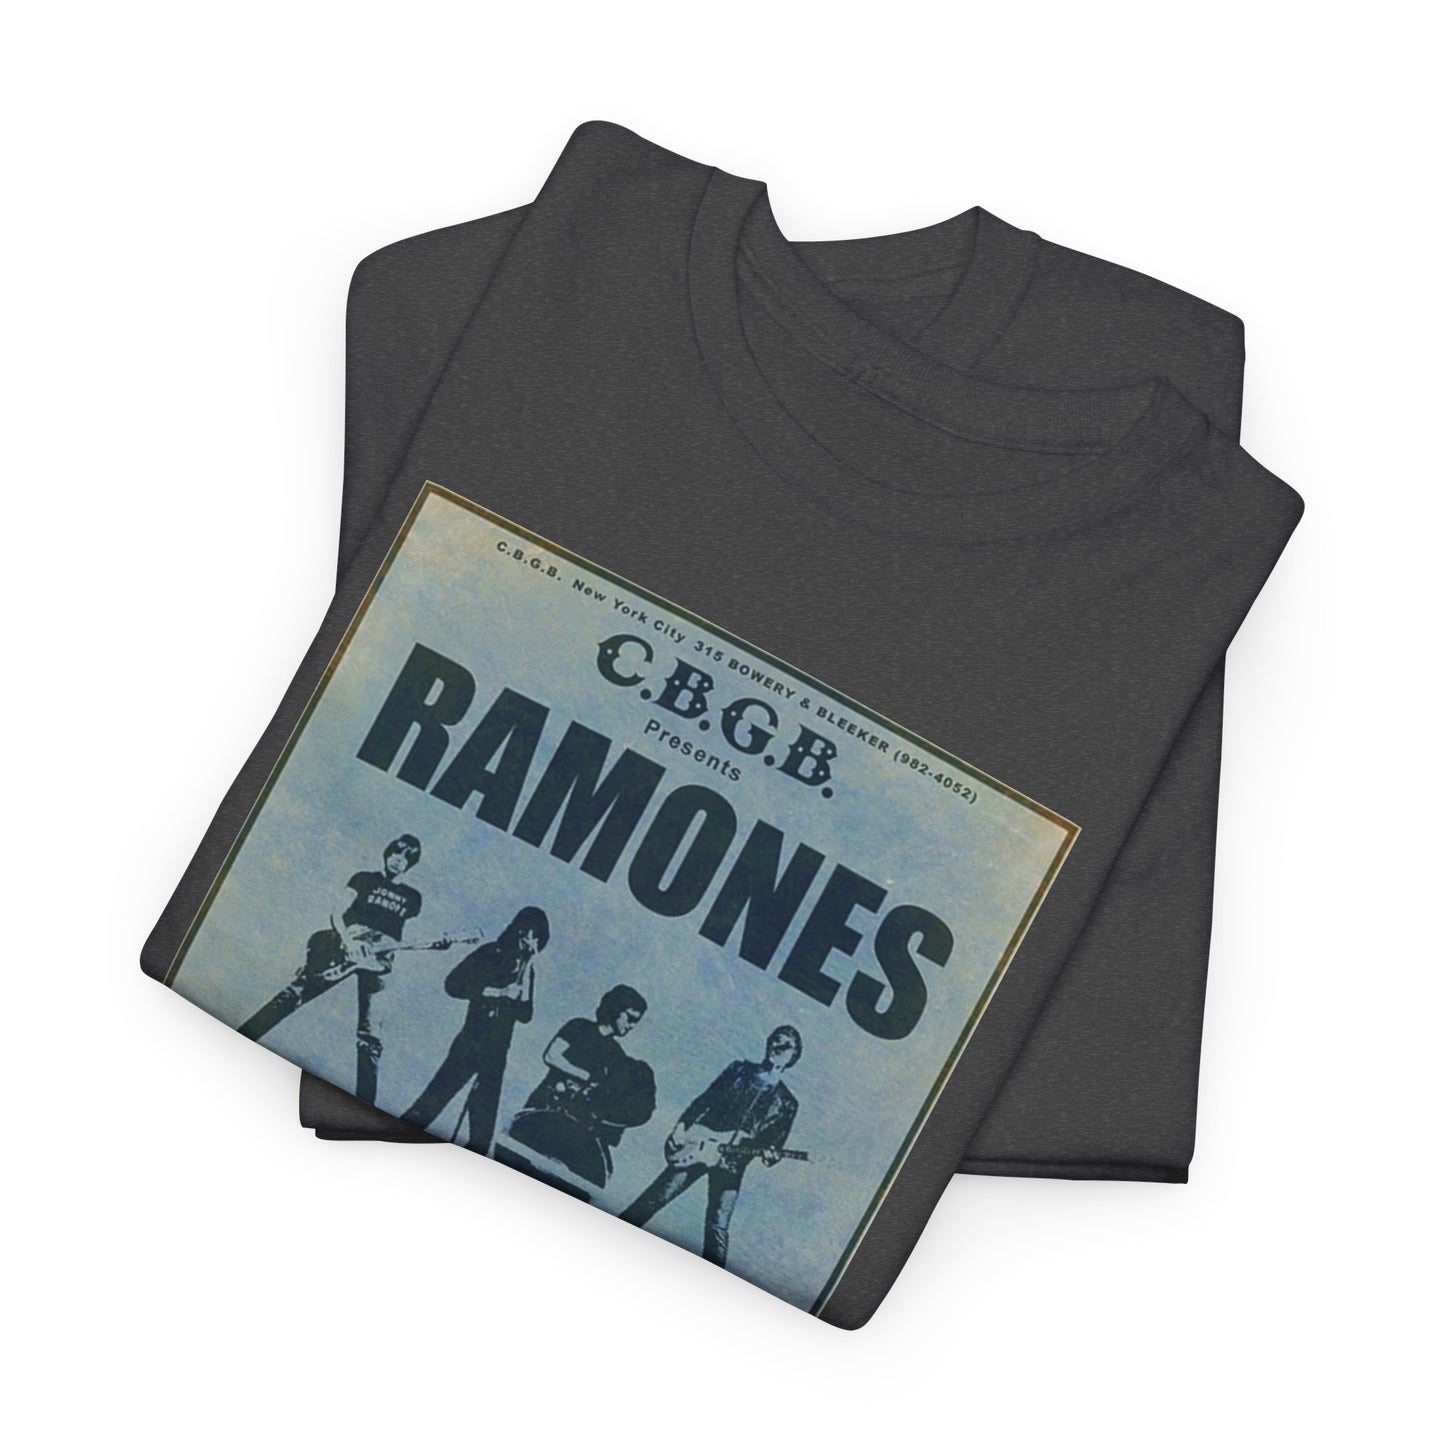 Concert Poster Tee #052: Ramones